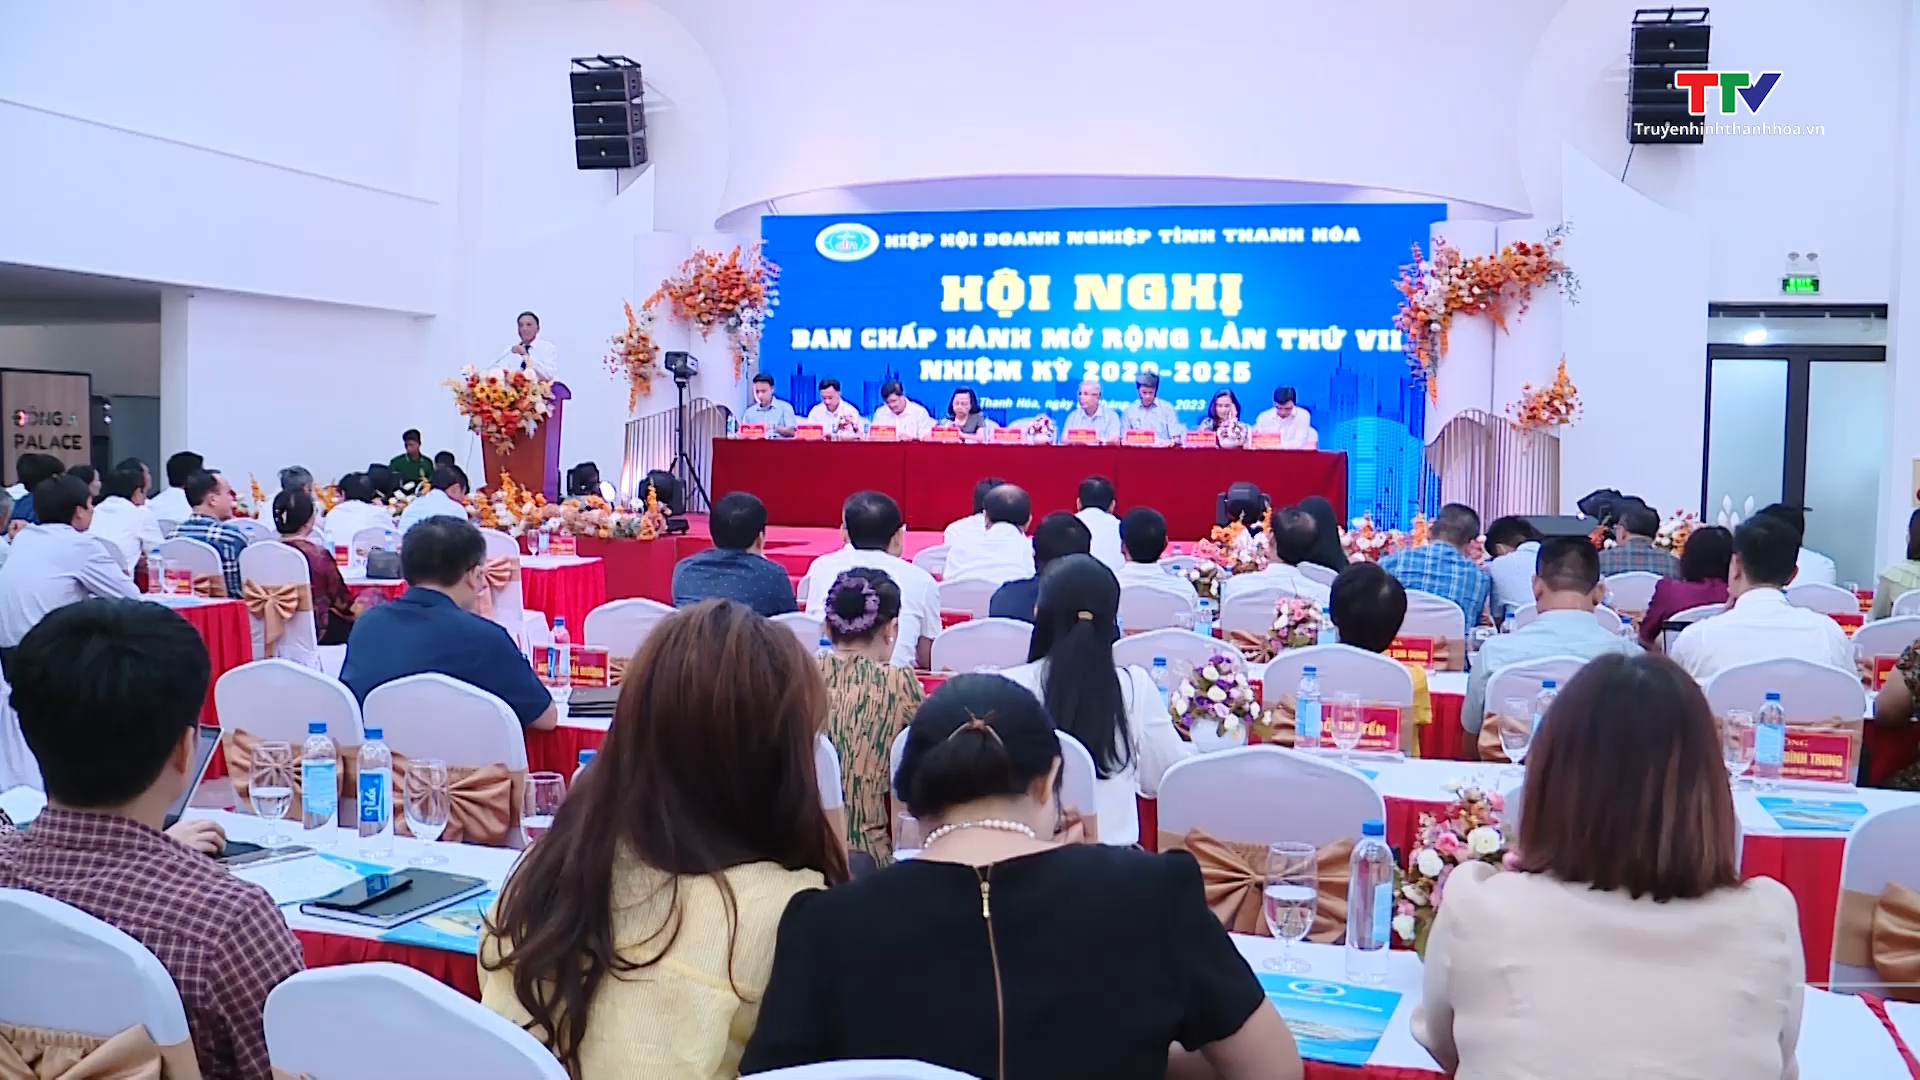 Hội nghị ban chấp hành mở rộng Hiệp hội Doanh nghiệp tỉnh Thanh Hóa lần thứ VII - Ảnh 2.